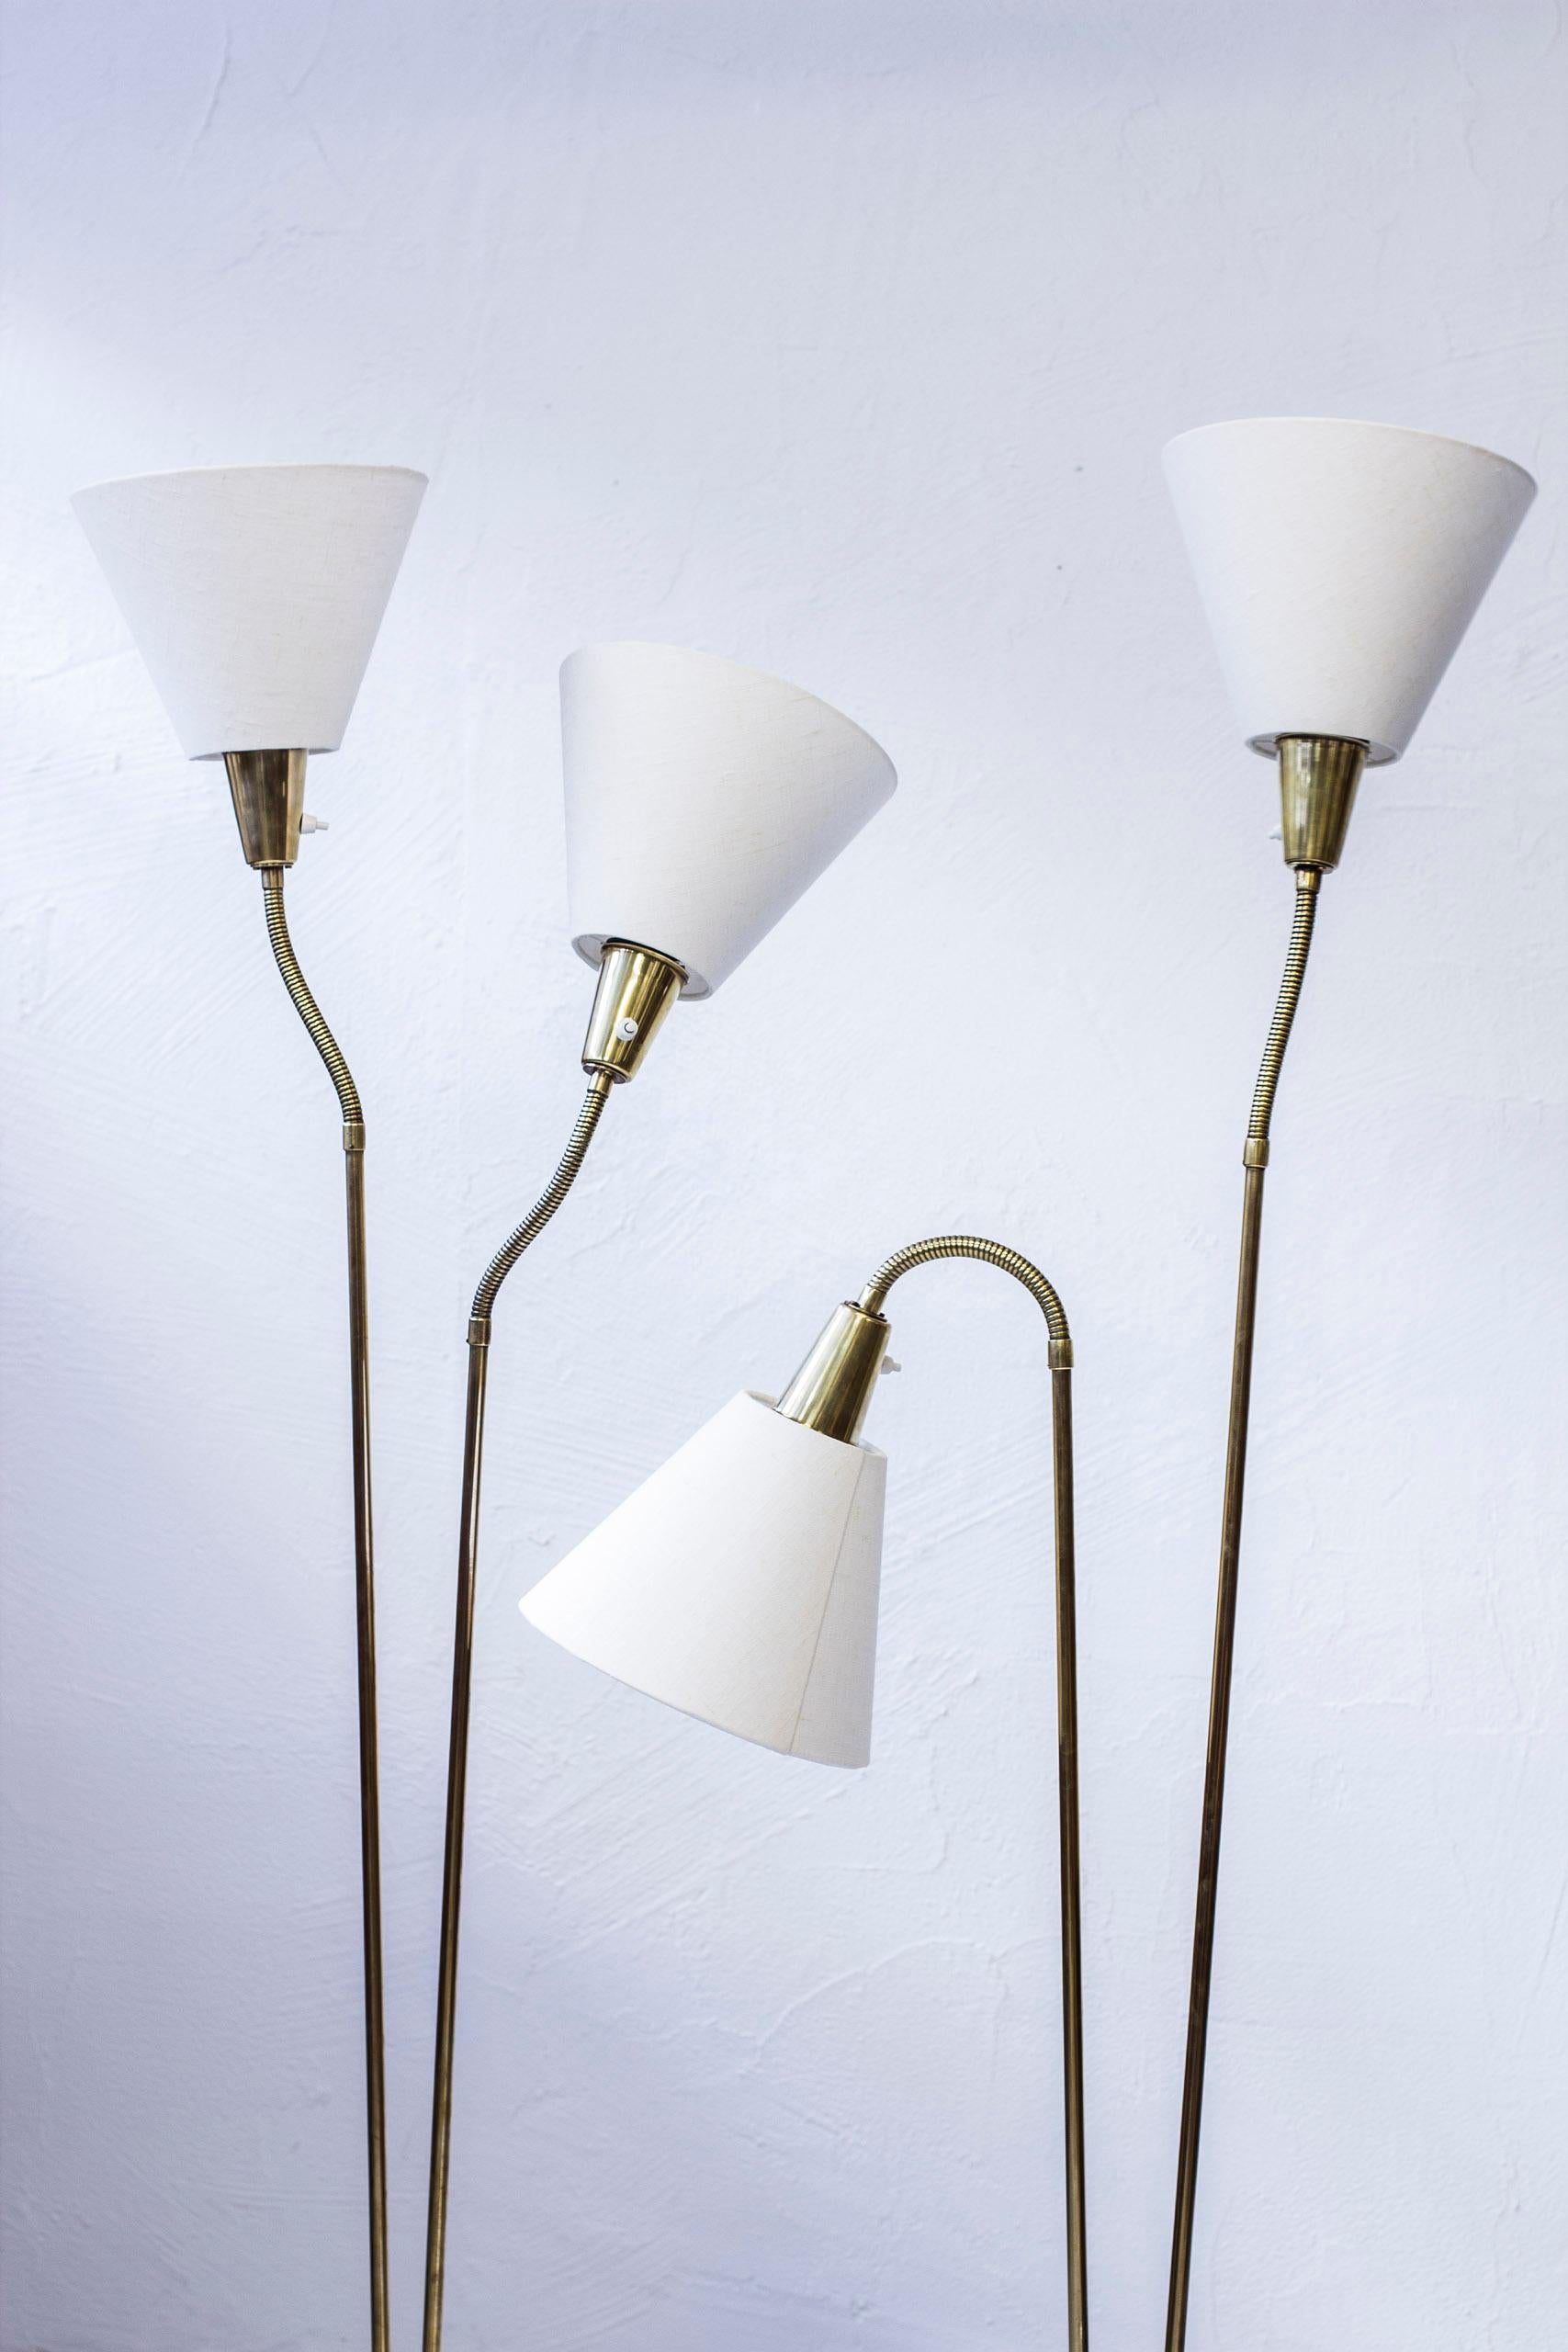 Scandinavian Modern Pair of Floor Lamps by Sonja Katzin, ASEA, Sweden, 1950s